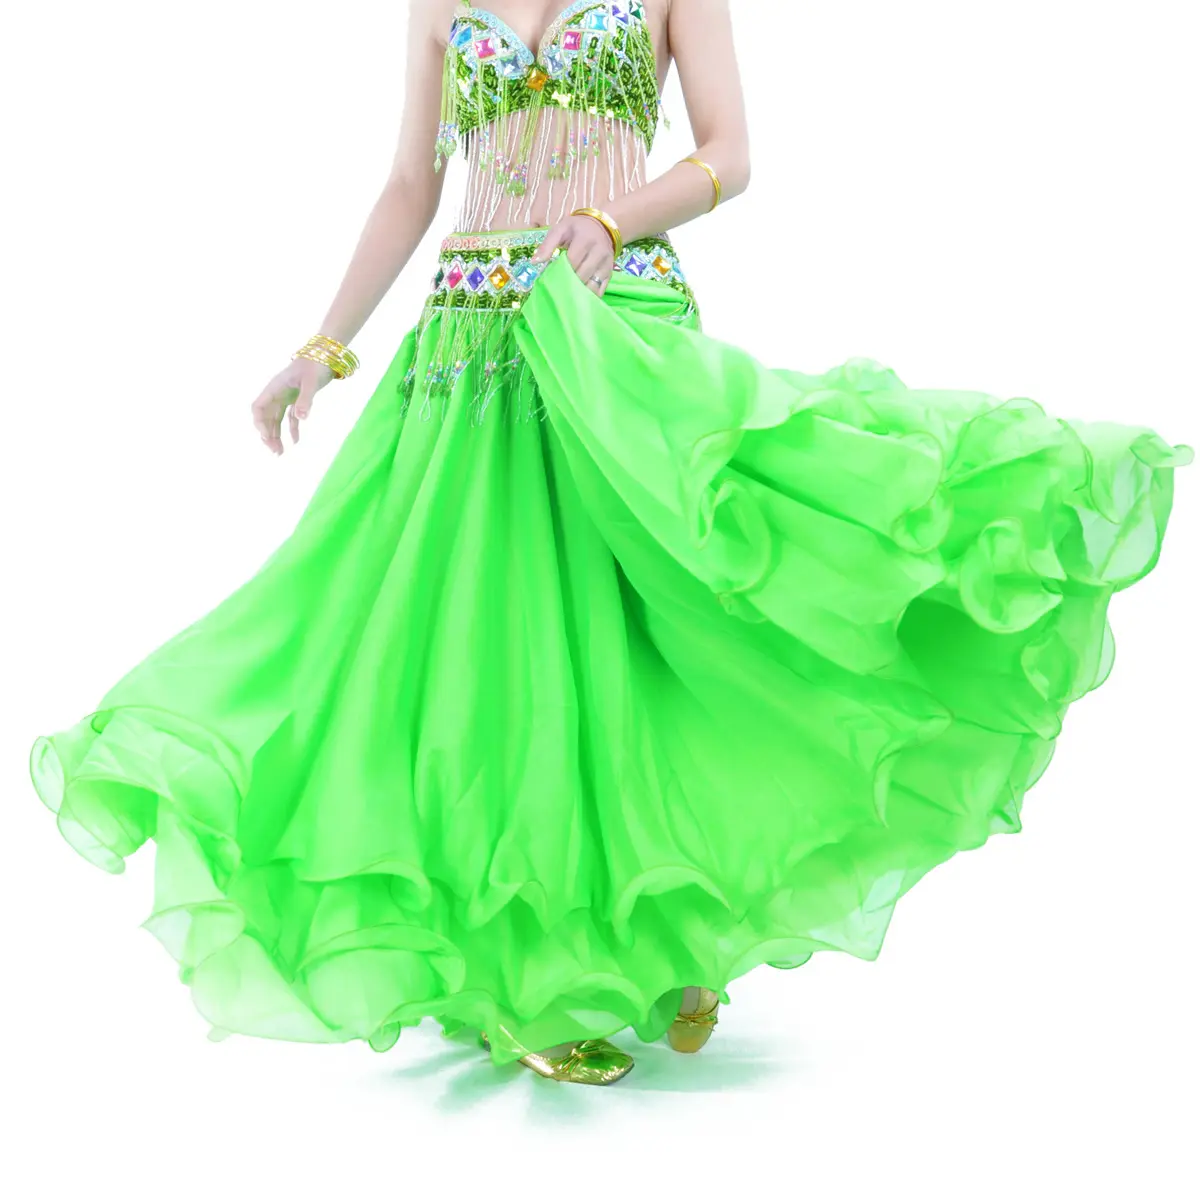 Юбка для танца живота, 12 м, зеленый, 3-слойный шифоновый танцевальный костюм, оптовая продажа